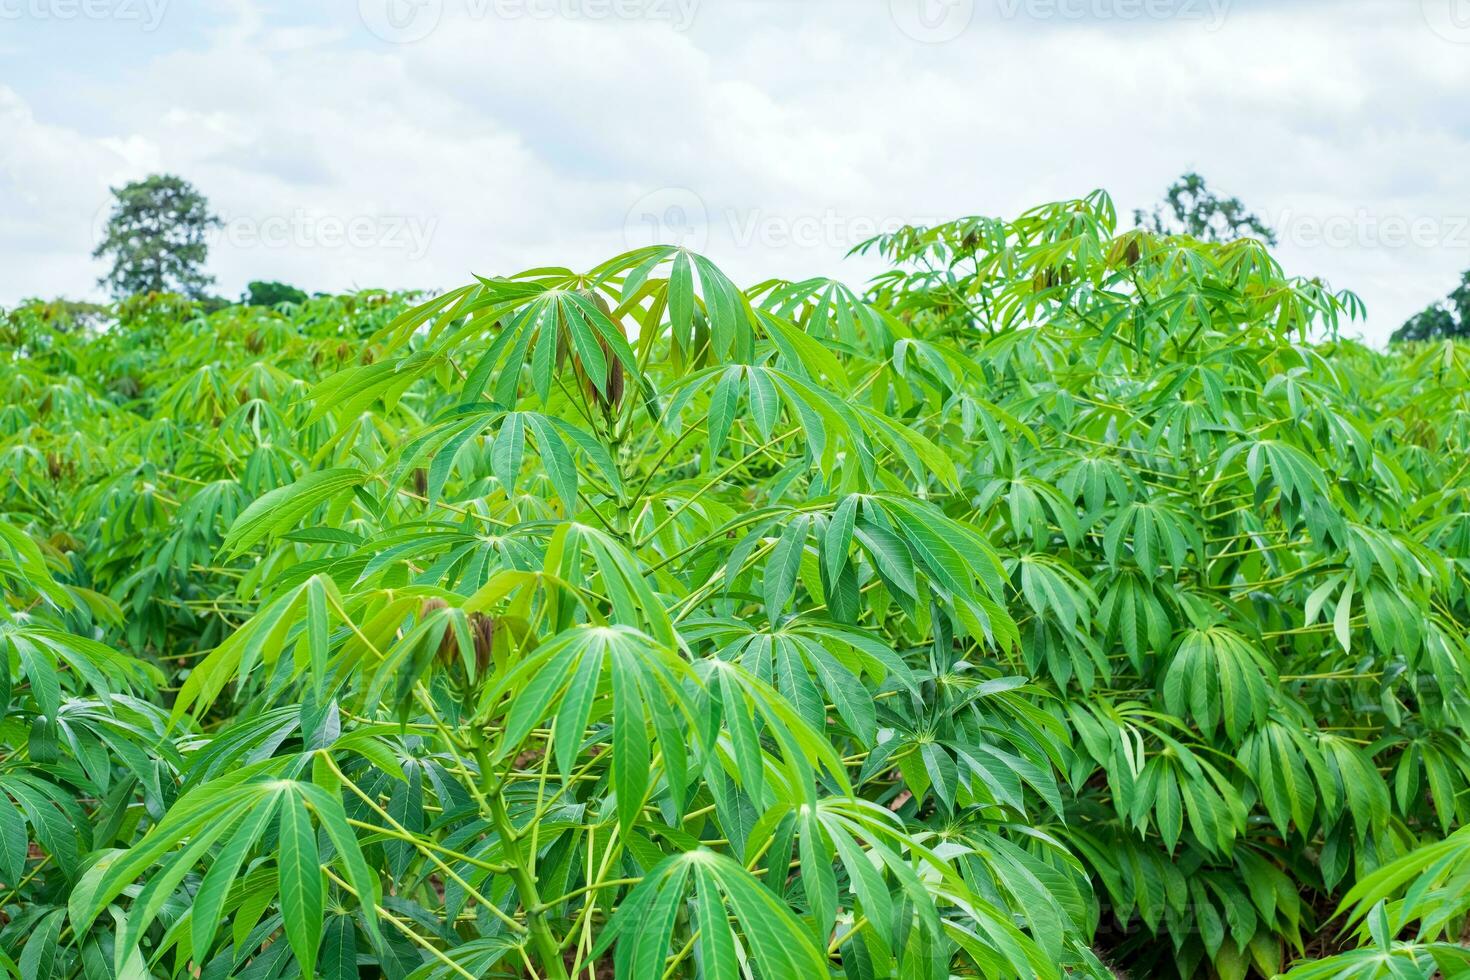 la yuca, en los campos de yuca en época de lluvias, tiene verdor y frescura. muestra la fertilidad del suelo, hoja de mandioca verde foto